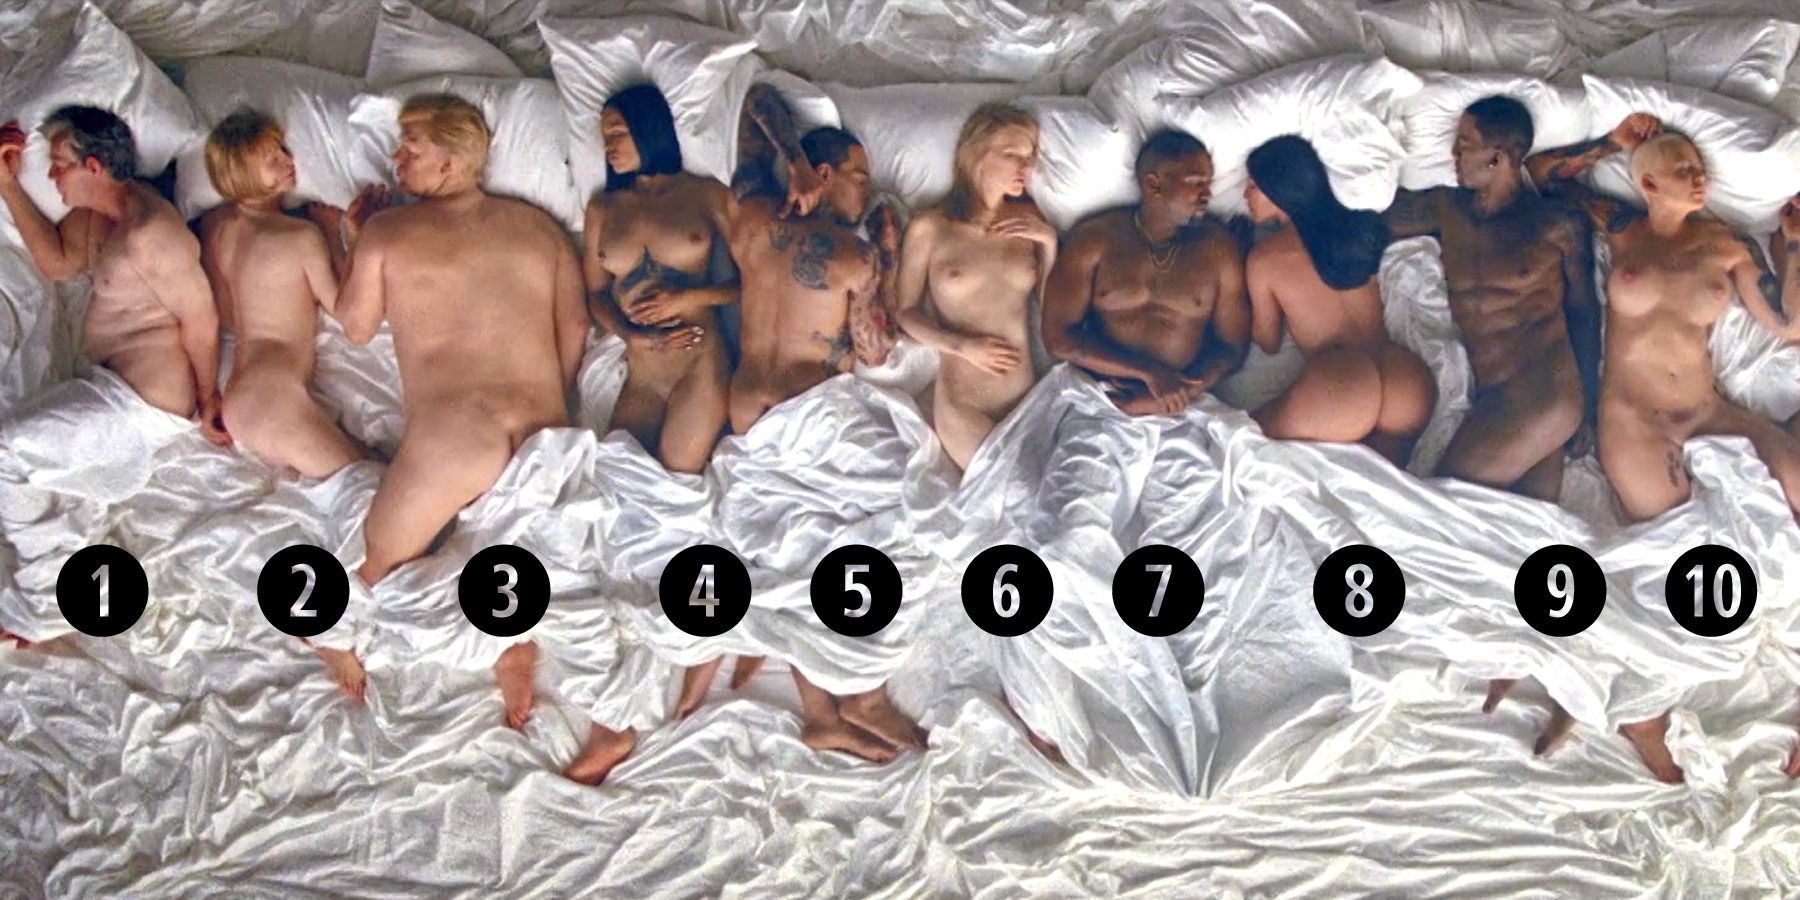 Kanye west nude photos